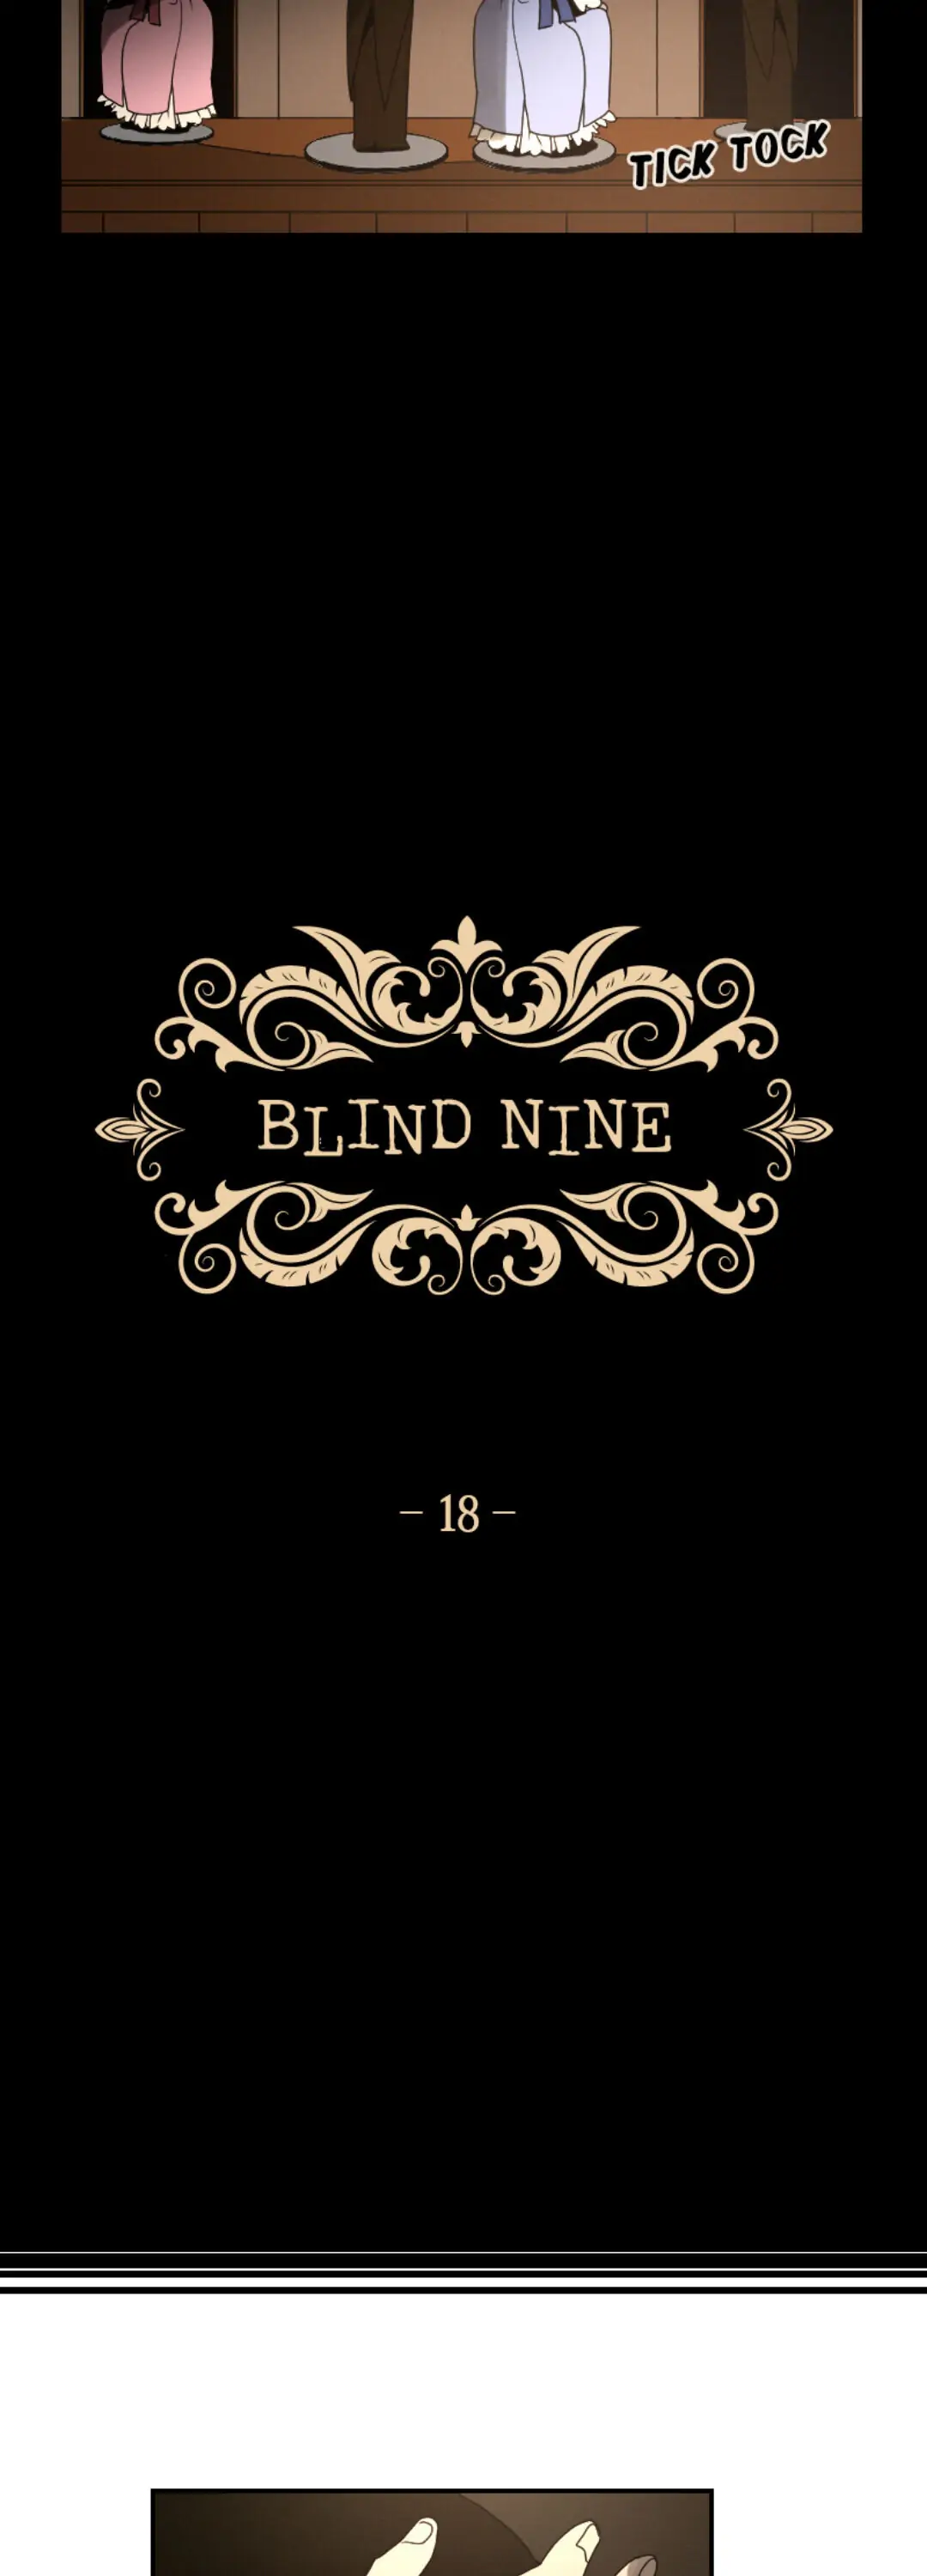 Blind Nine chapter 18